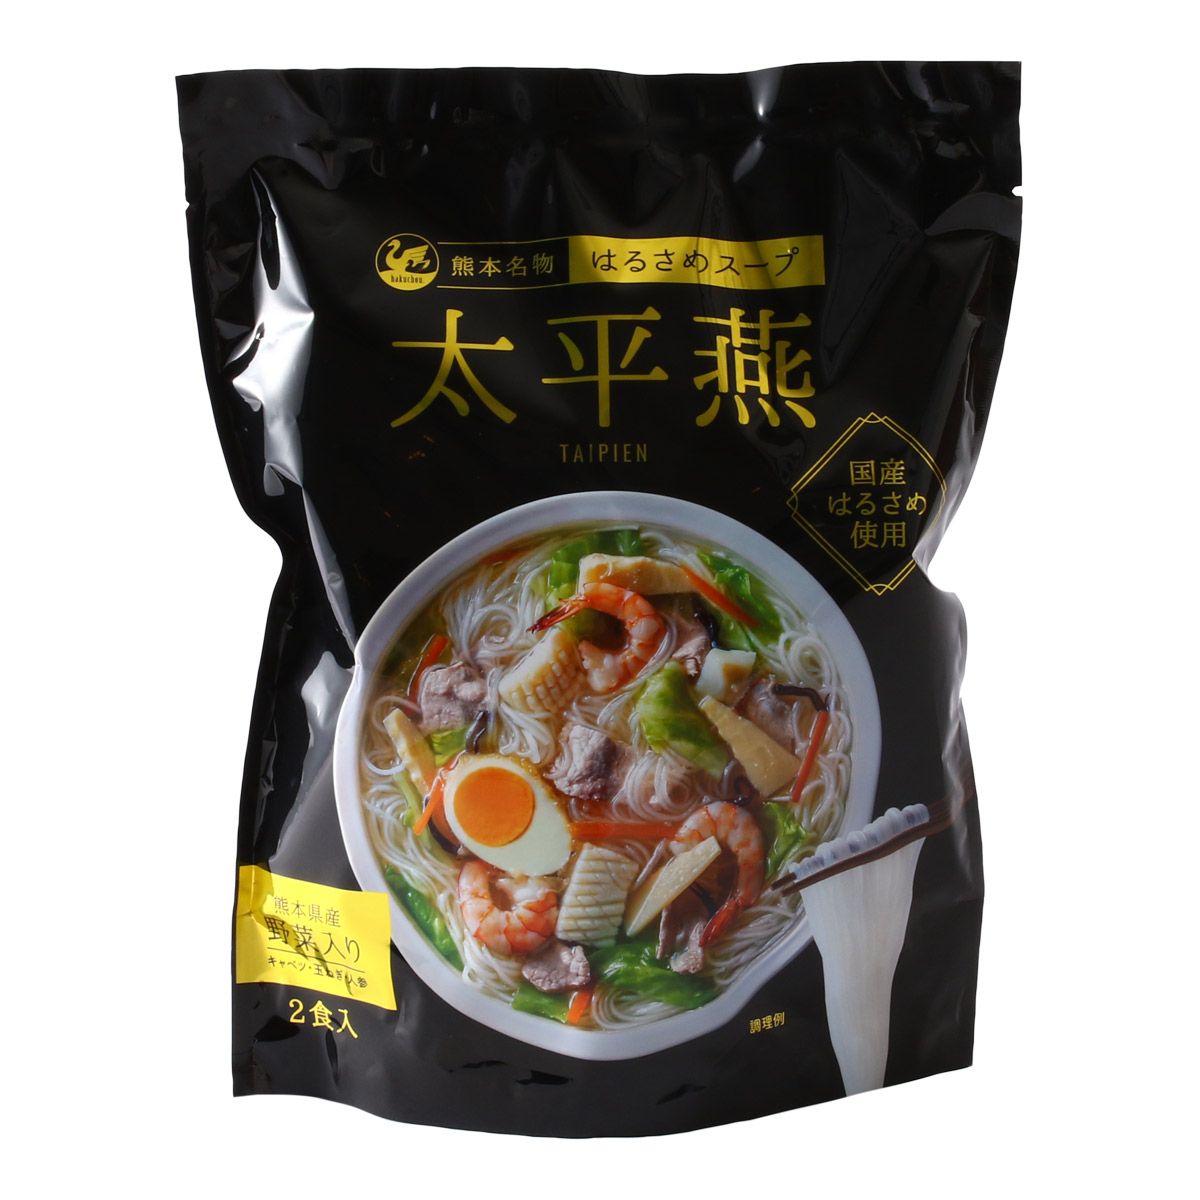 西日本食品工業 太平燕 2食入112g(はるさめ 40g×2、スープ 10g×2、乾燥野菜 6g×2) はるさめスープ 熊本名物 はるさめスープ